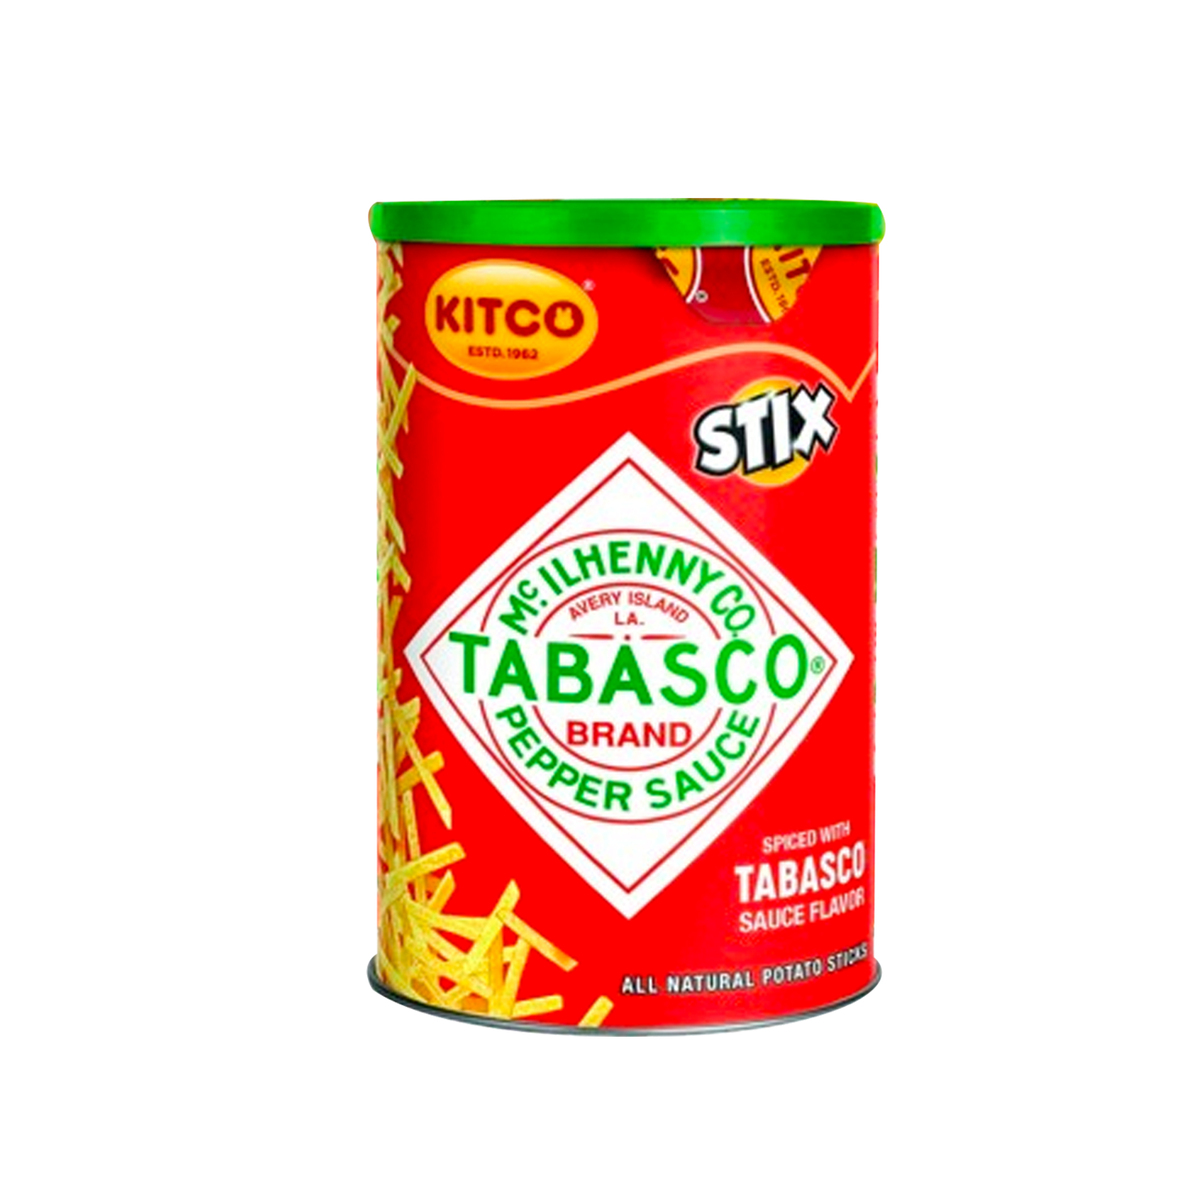 Kitco Stix Tabasco Pepper Sauce Potato Sticks 6 x 40 g